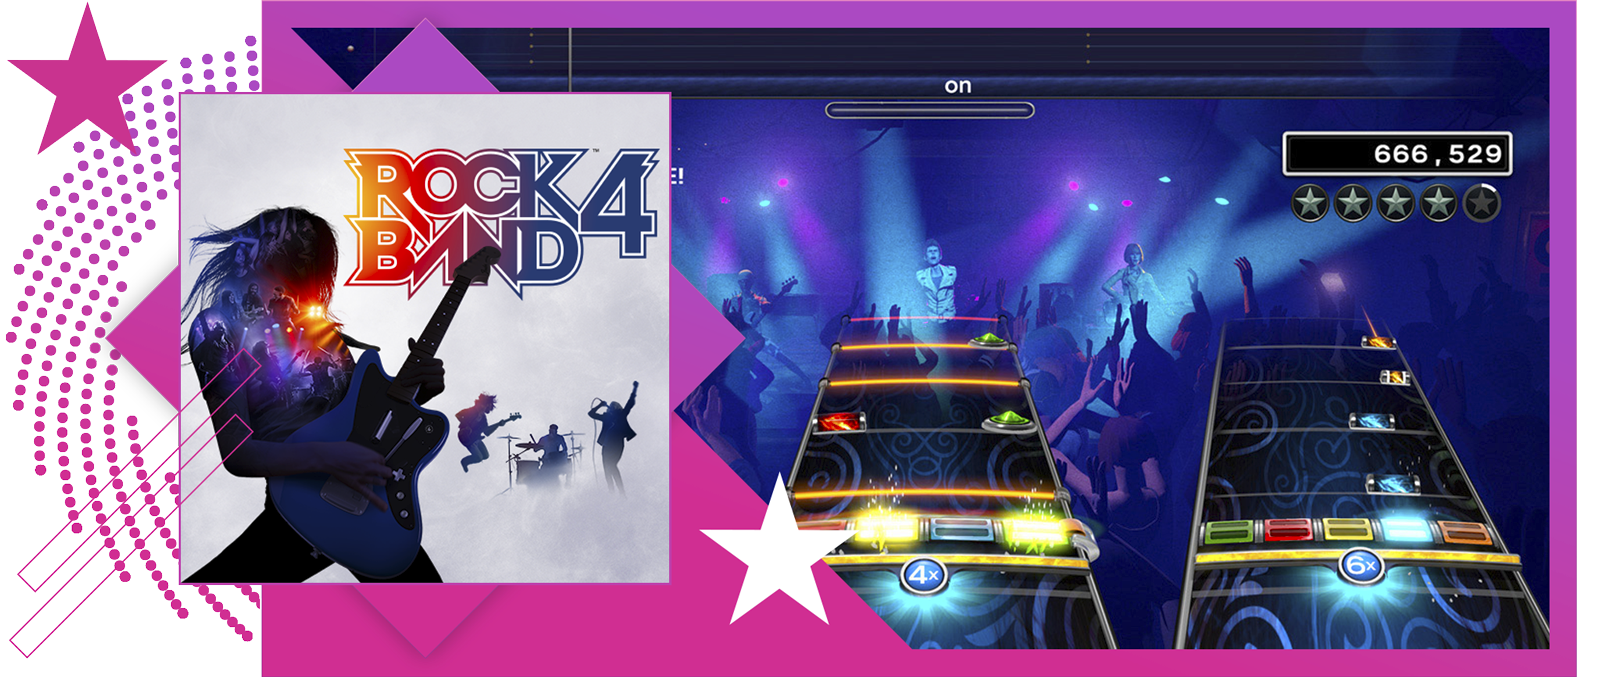 I migliori giochi musicali - Immagine in evidenza che include immagine principale e immagine del sistema di gioco di Rock Band 4.